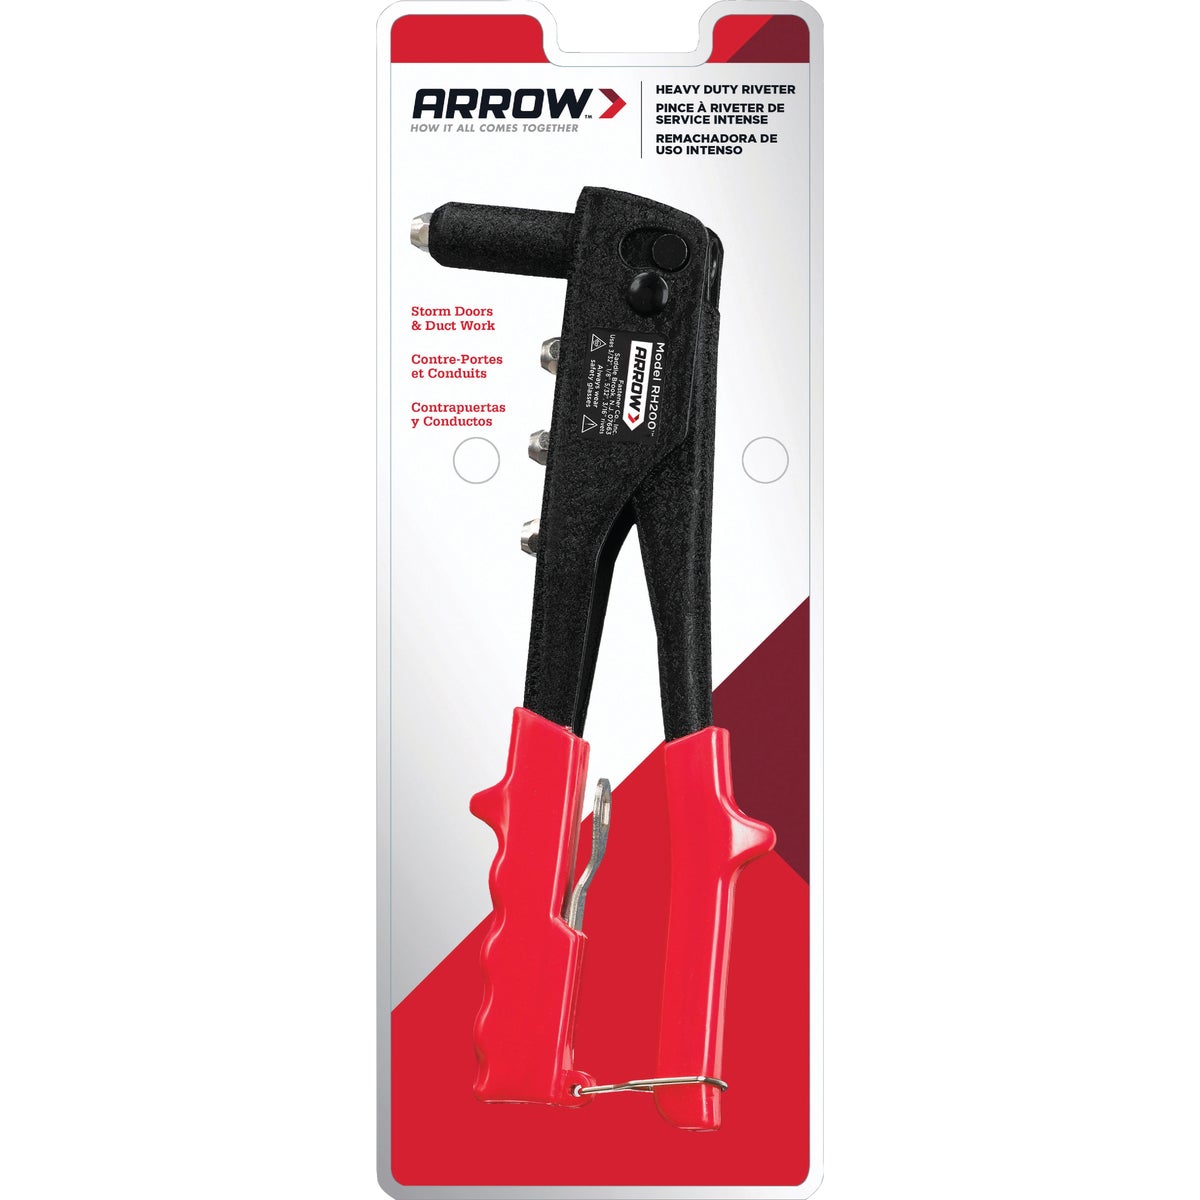 Arrow Heavy Duty Rivet Tool